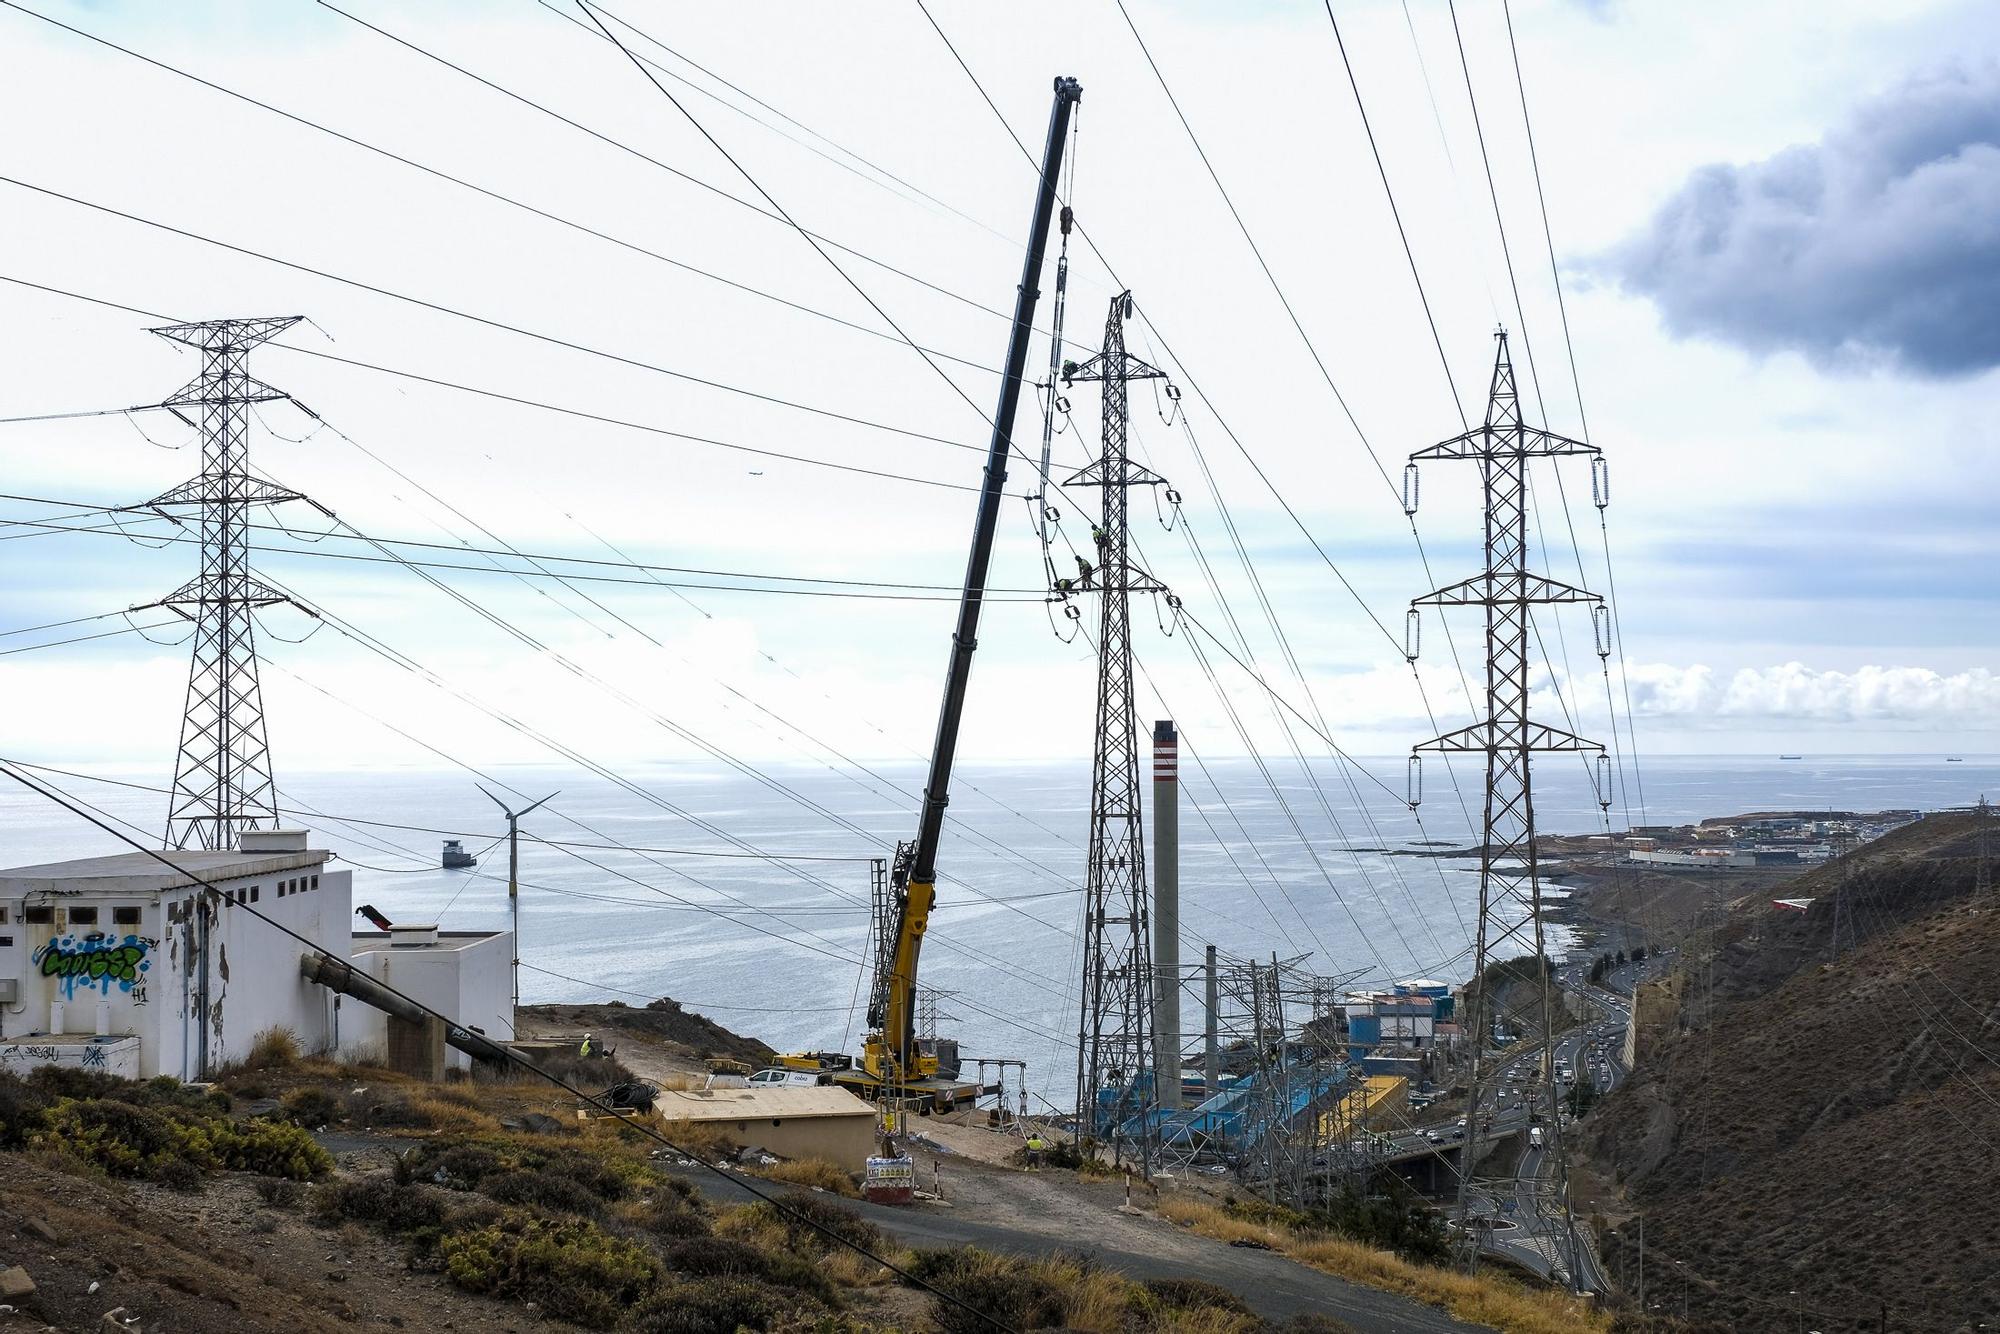 Operarios desmontando torretas de alta tensión junto a la central electrica en Jinámar